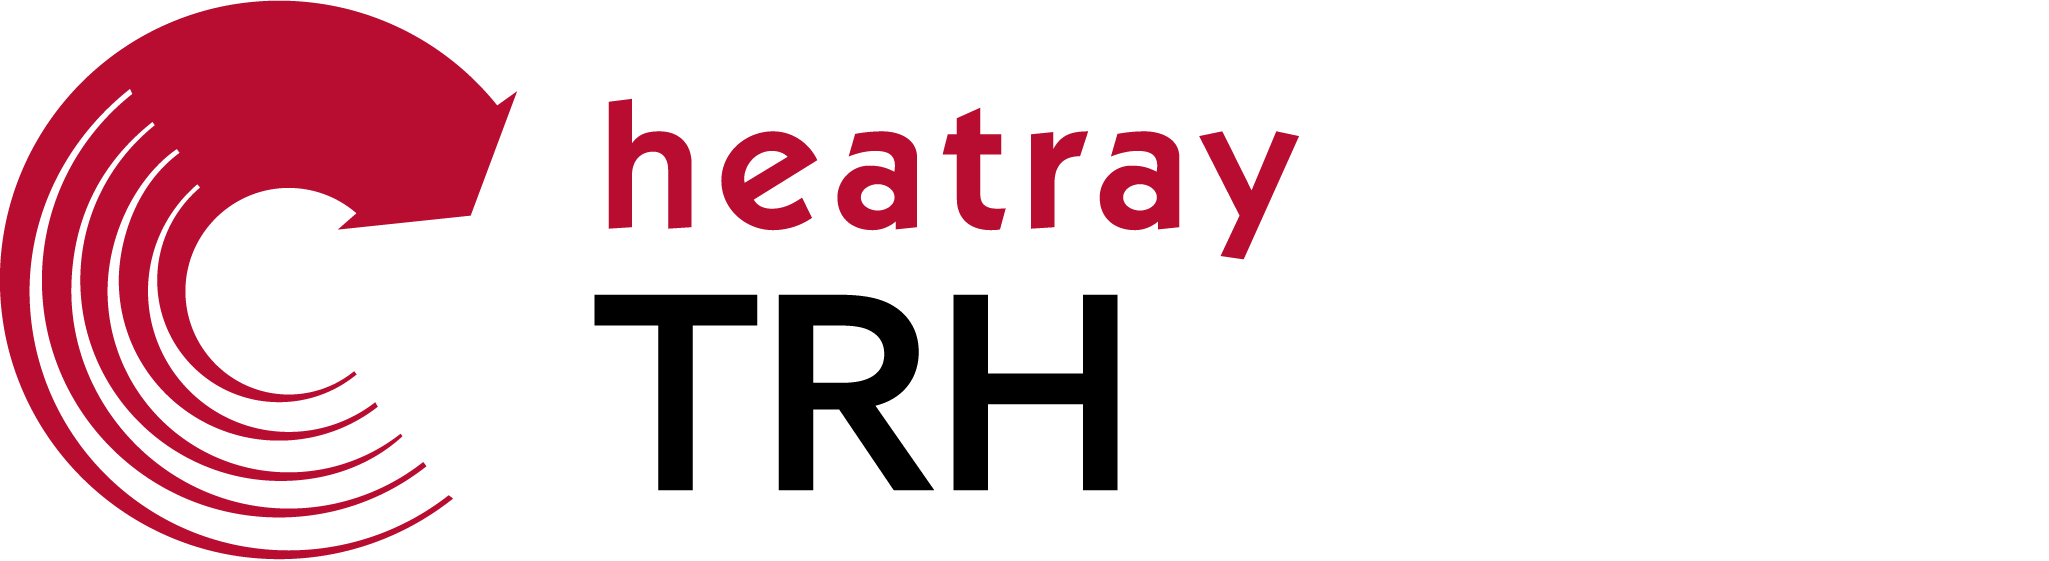 heatray - TRH